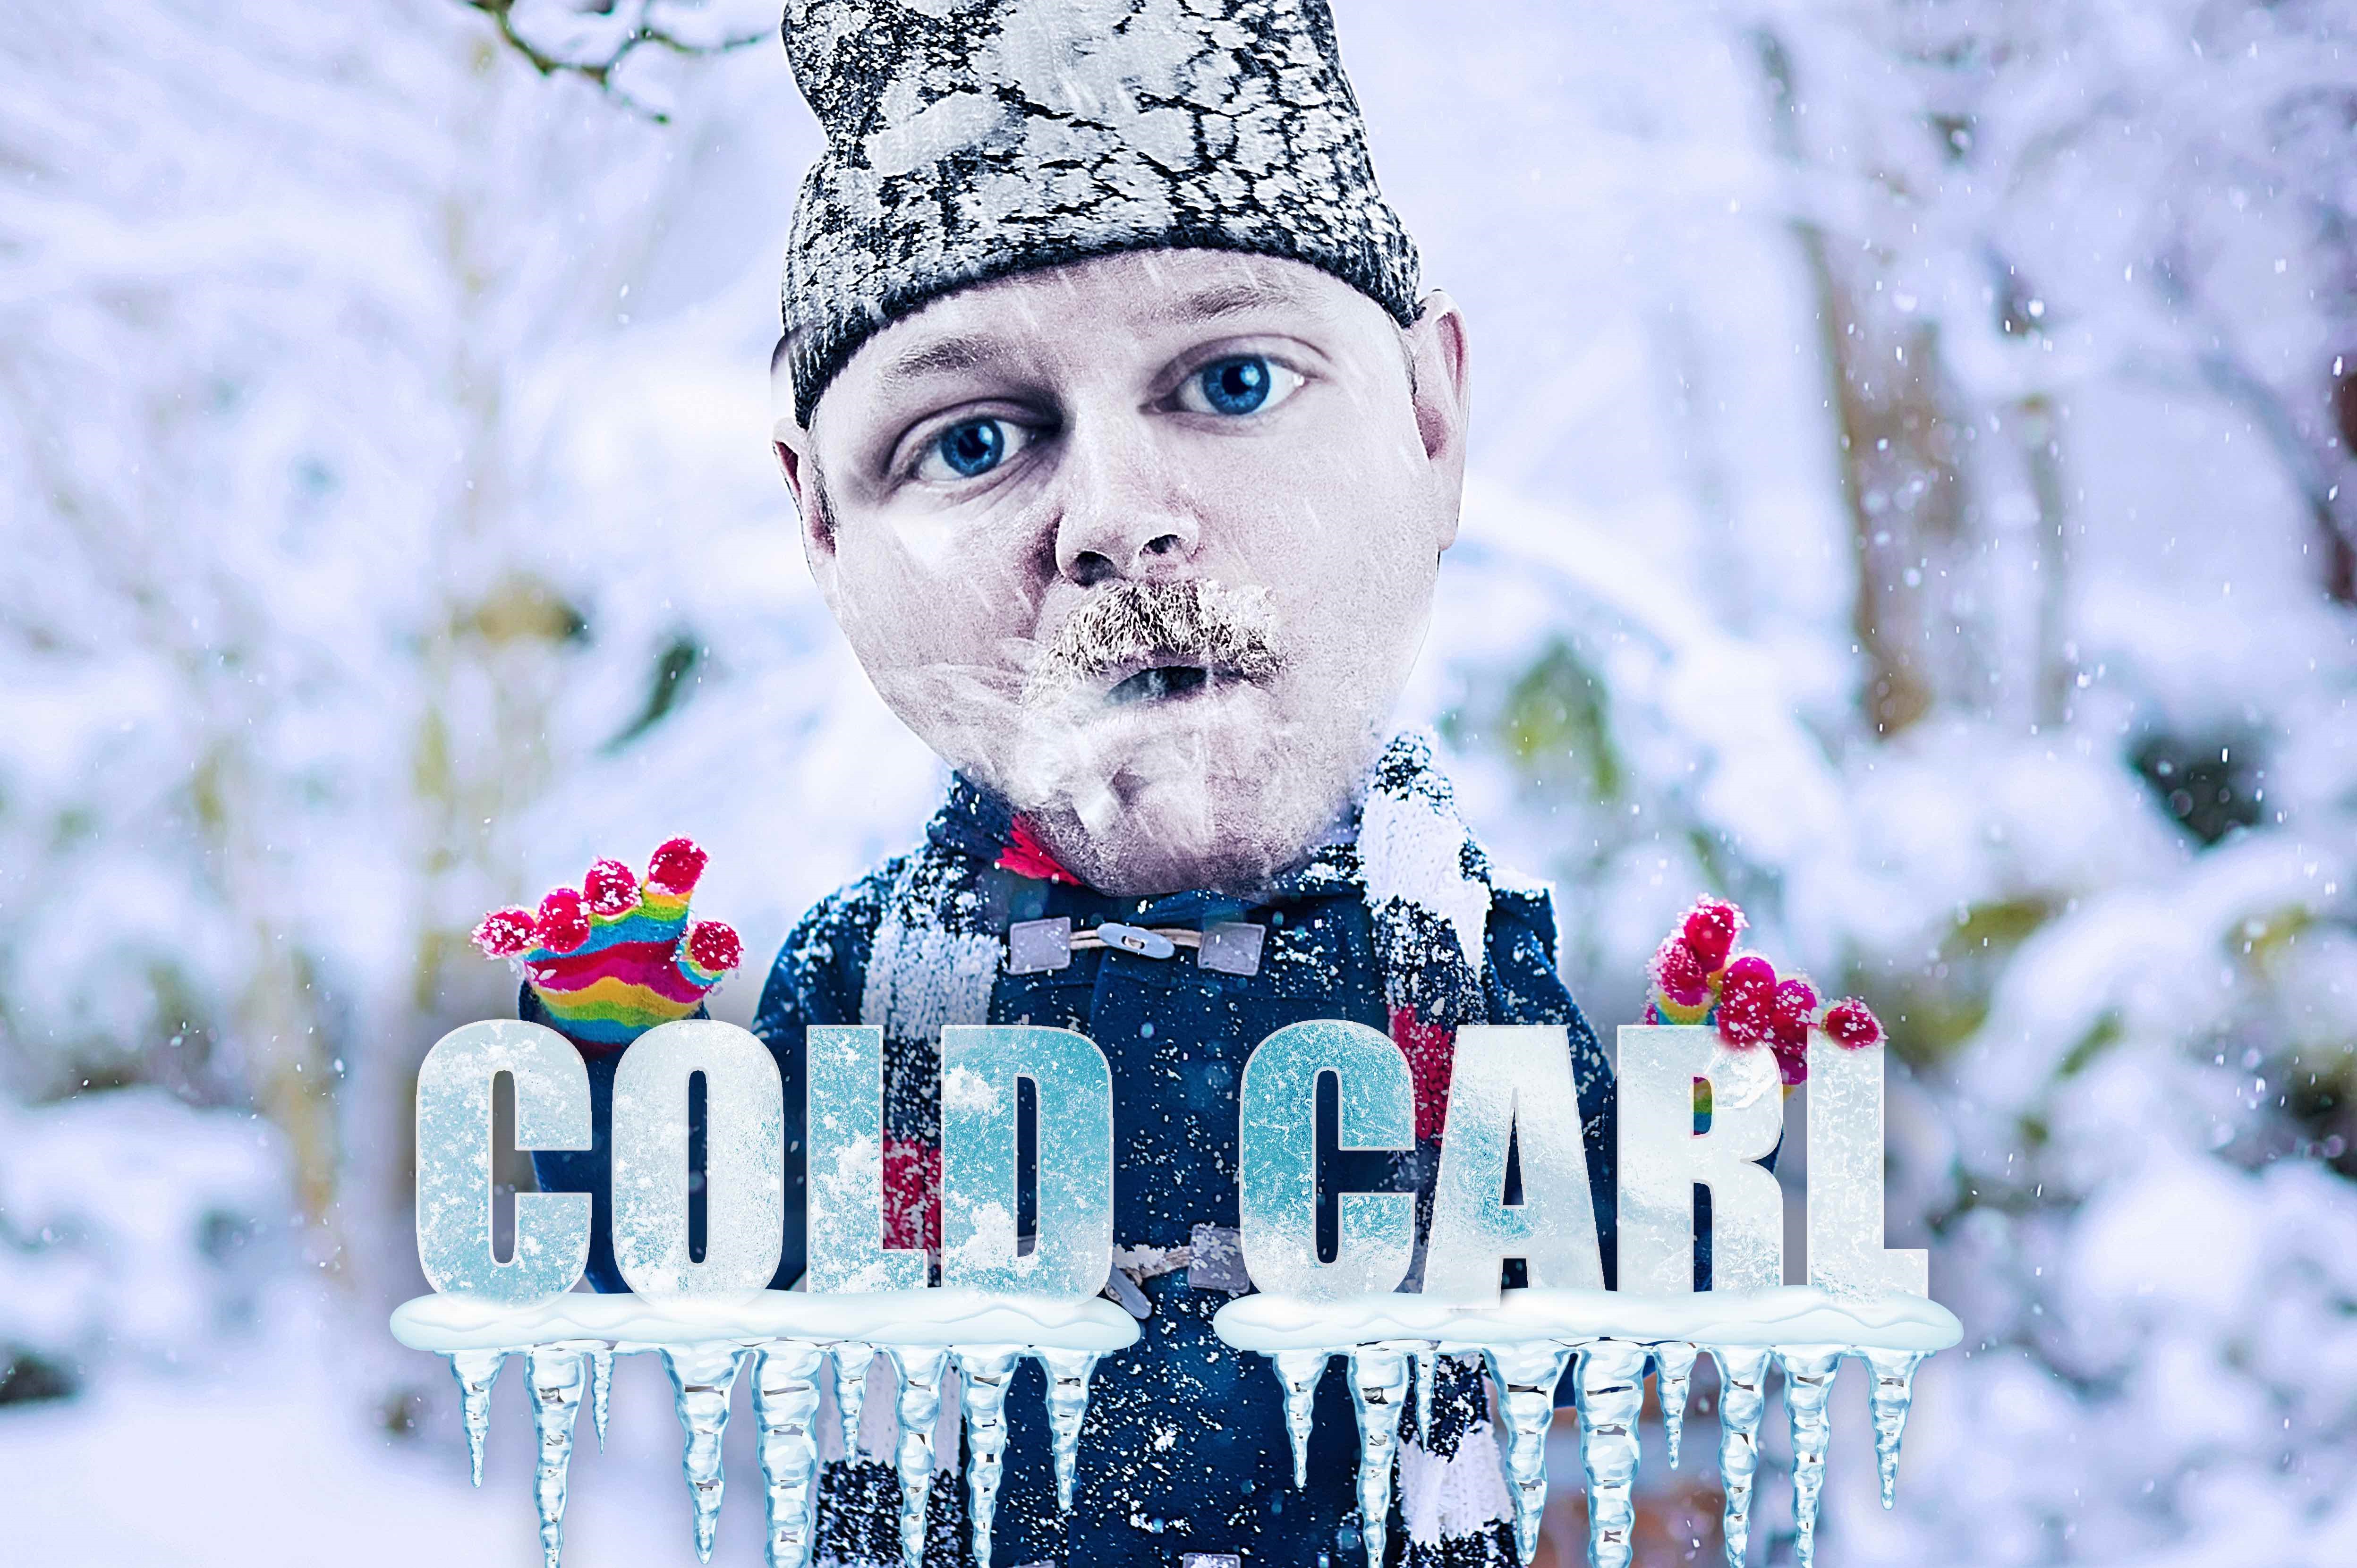 Cold Carl